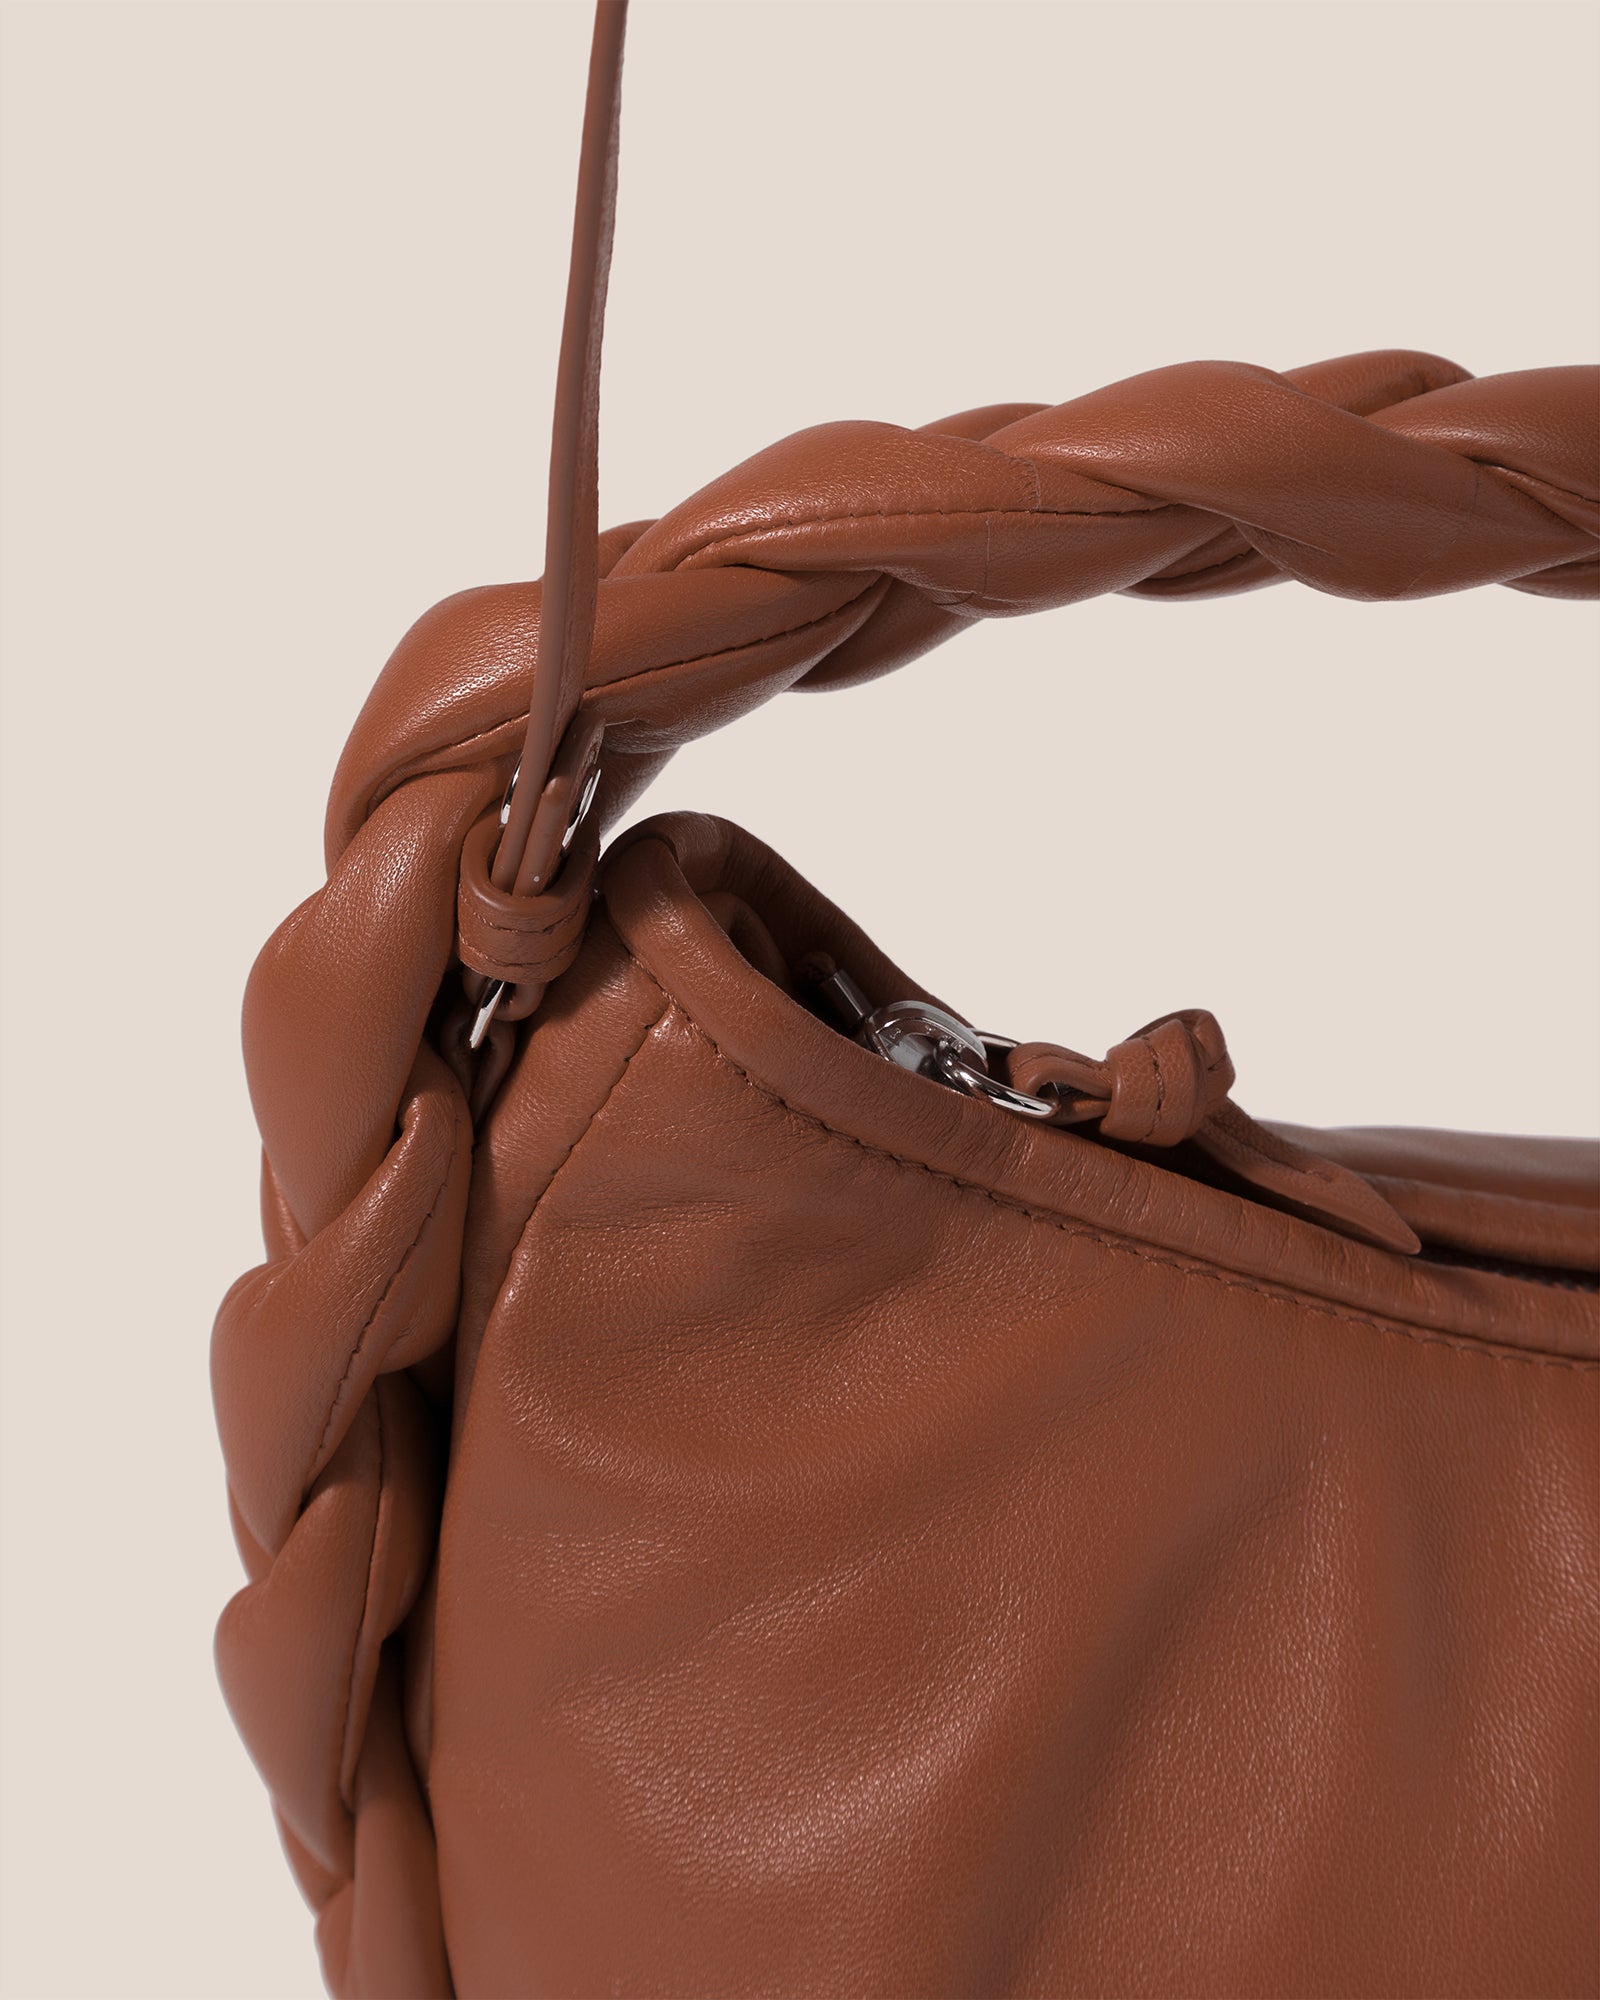 HEREU: mini bag for woman - Brown  Hereu mini bag WBR23ESMI001 online at